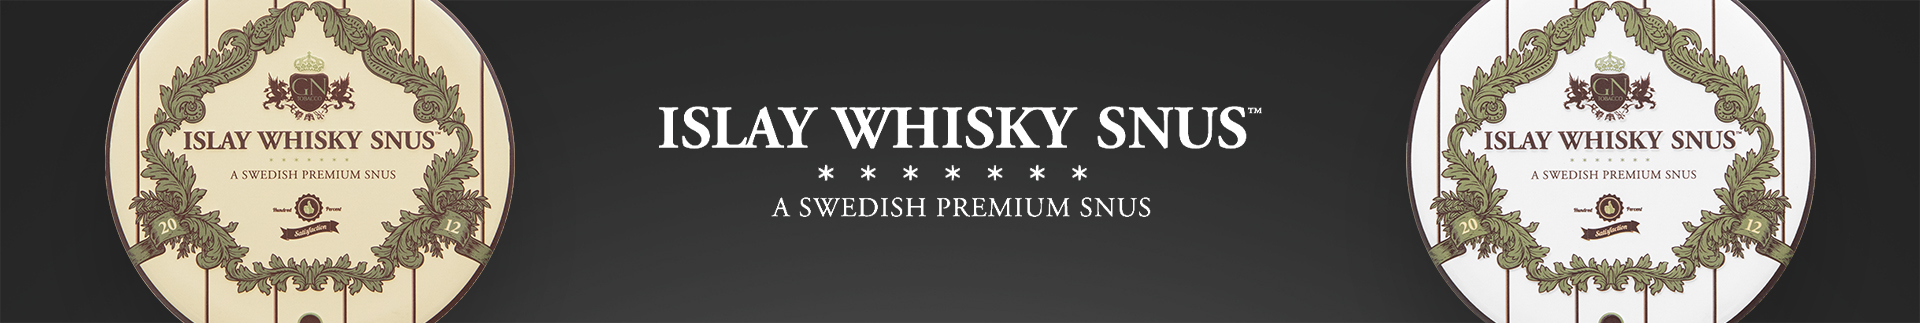 Islay Whisky